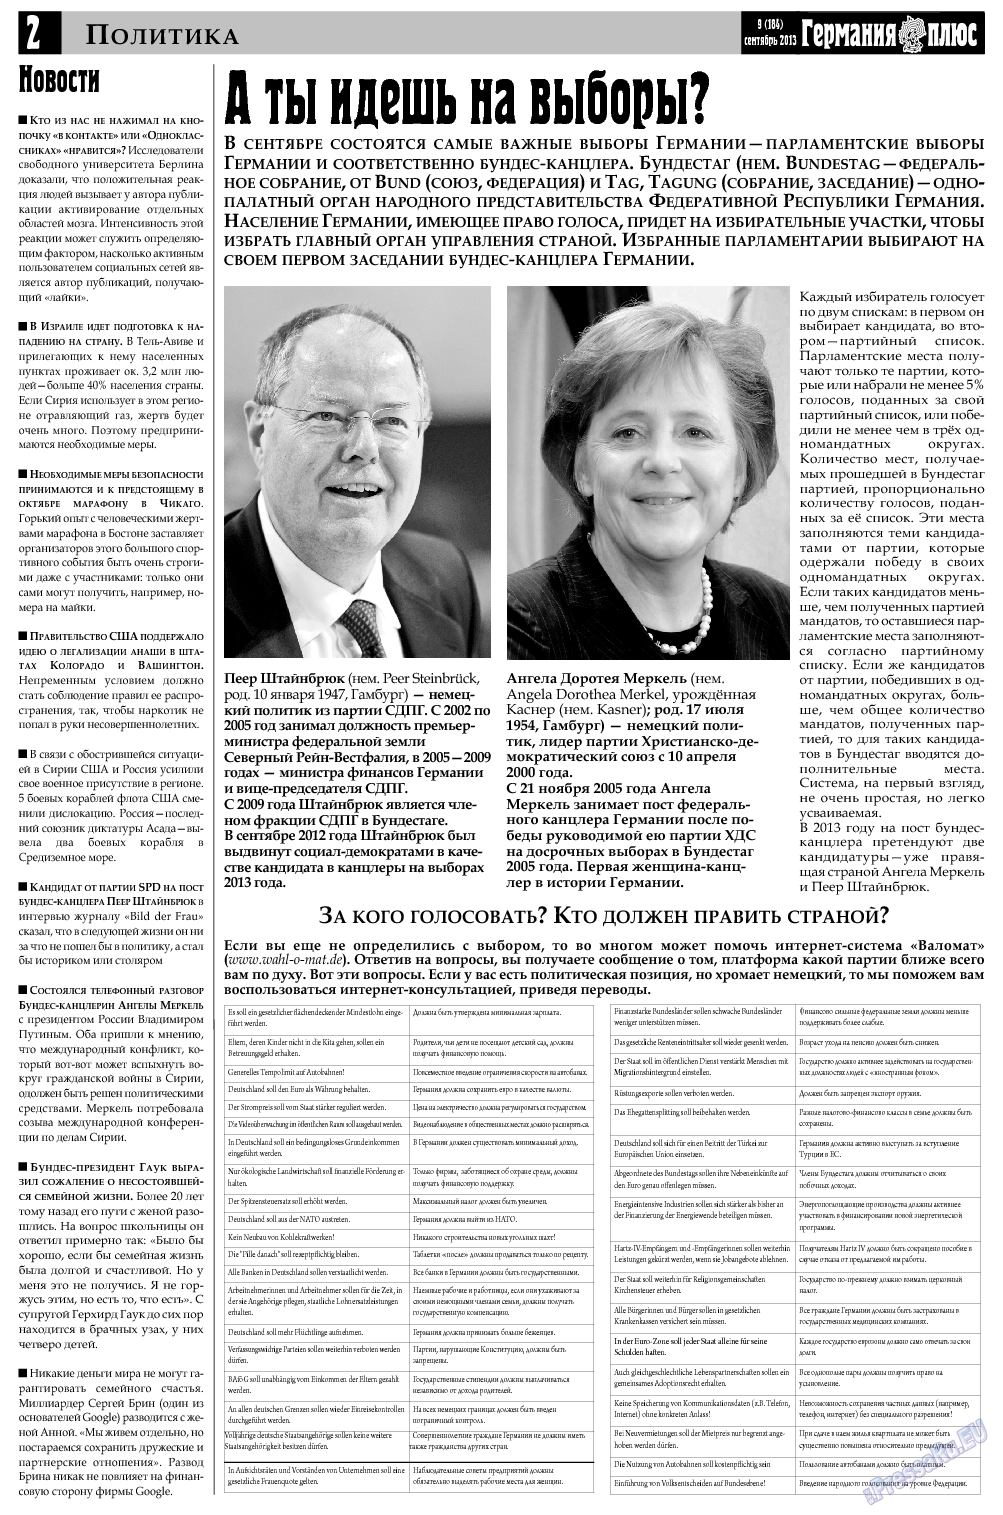 Германия плюс, газета. 2013 №9 стр.2